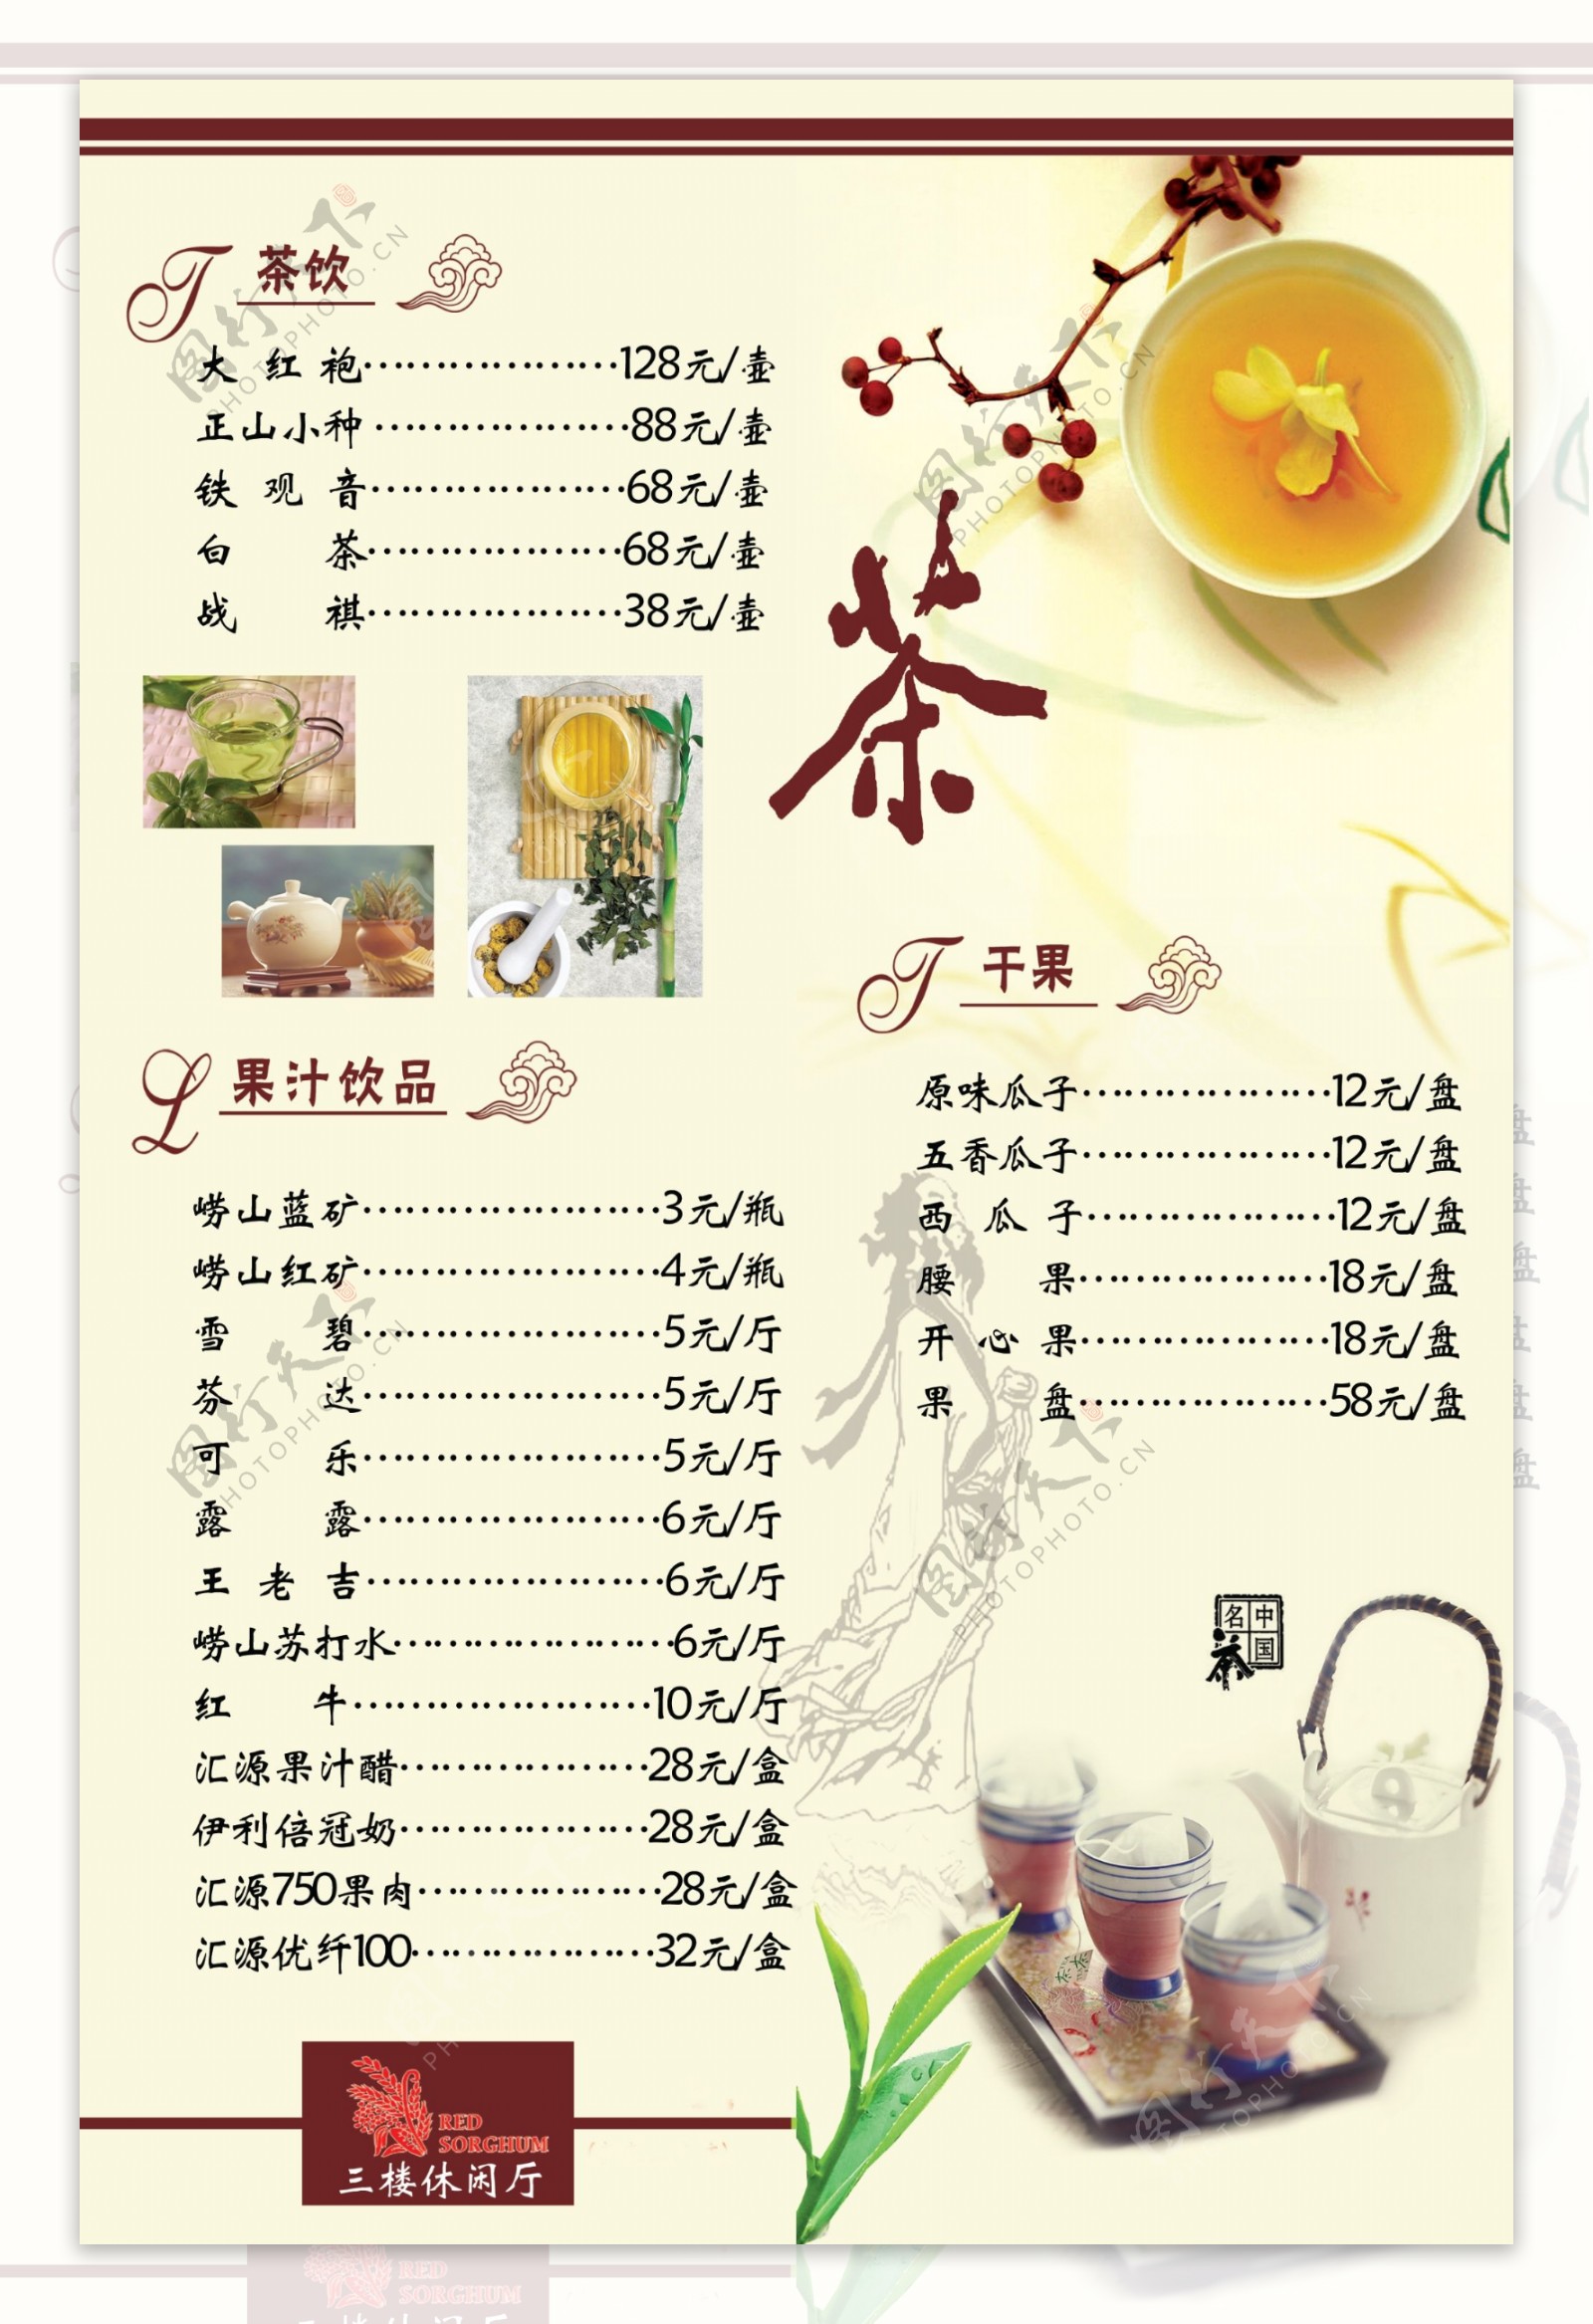 茶艺餐厅菜单图片